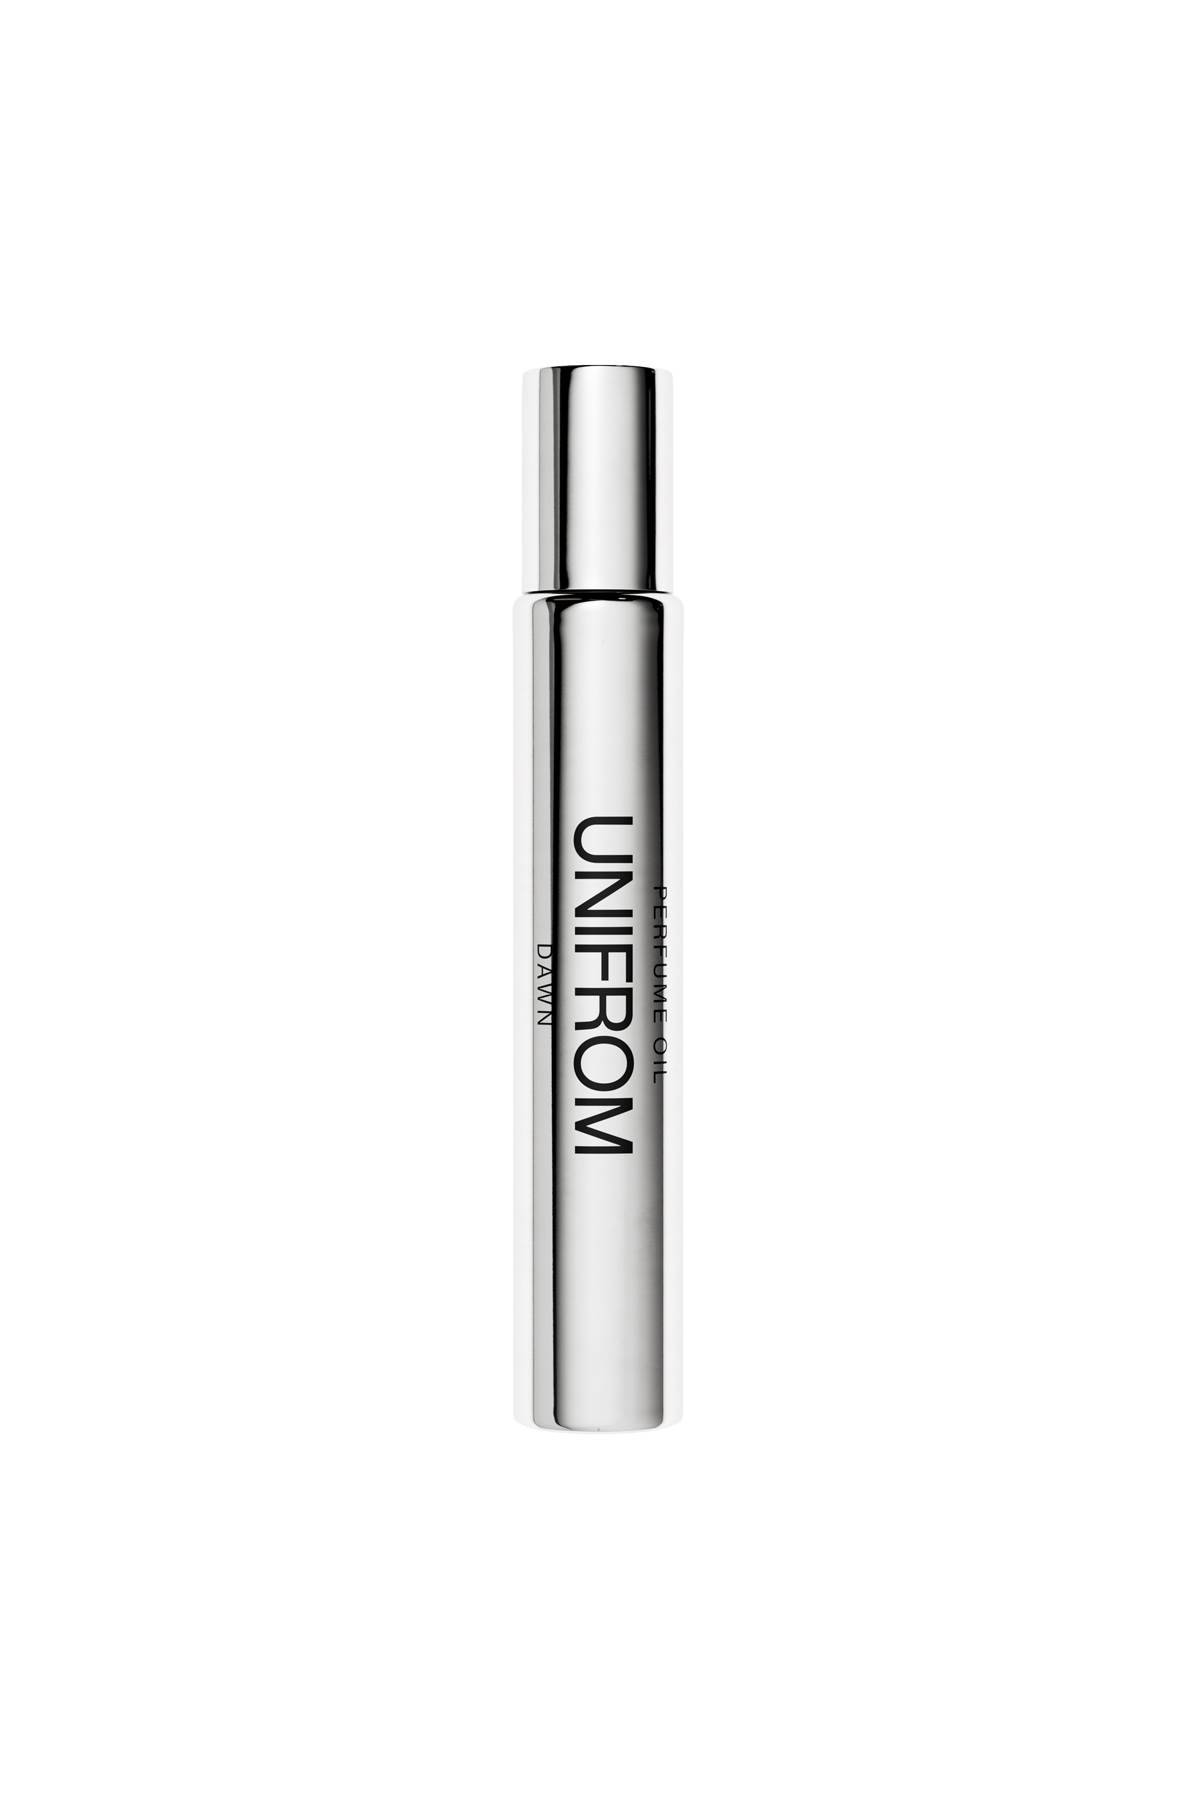 UNIFROM perfume oil dawn - 10ml